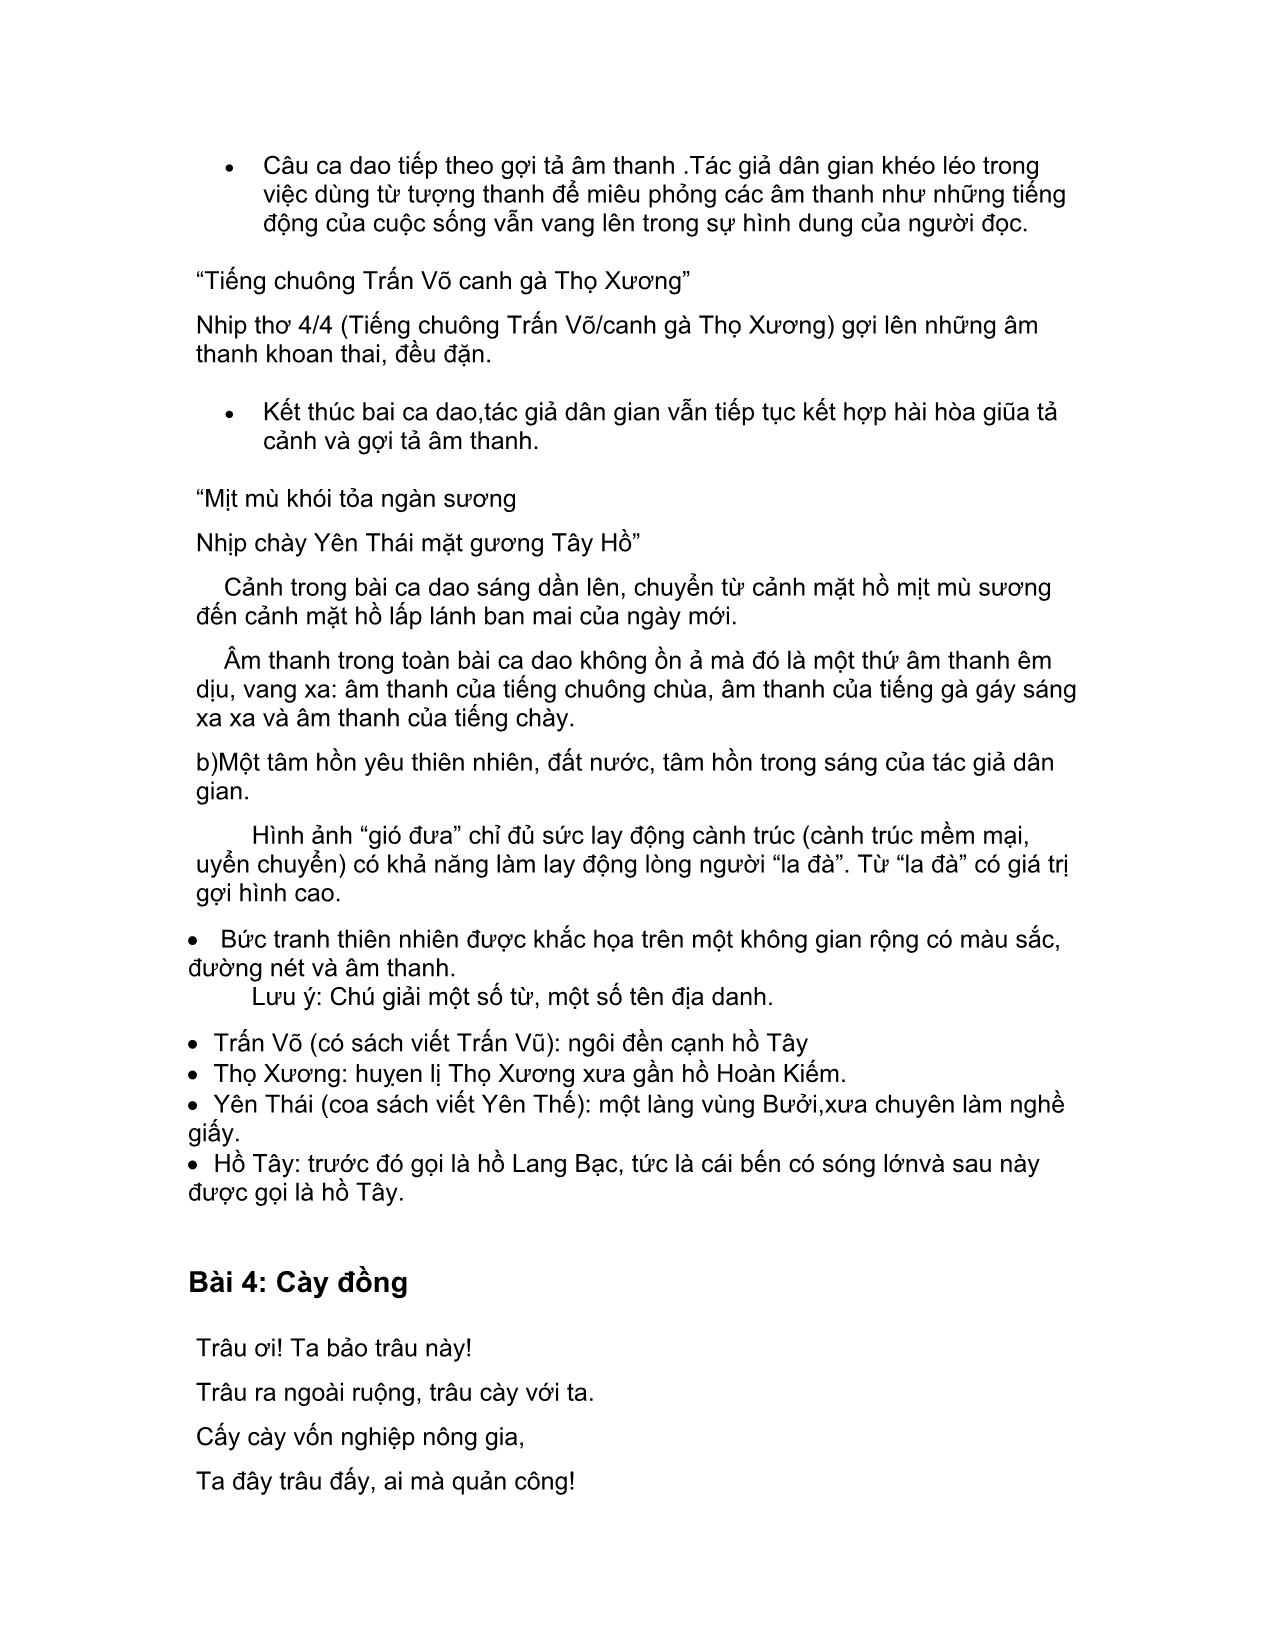 Tiếng Việt - Văn học và phương pháp giảng dạy (Phần 1) trang 5